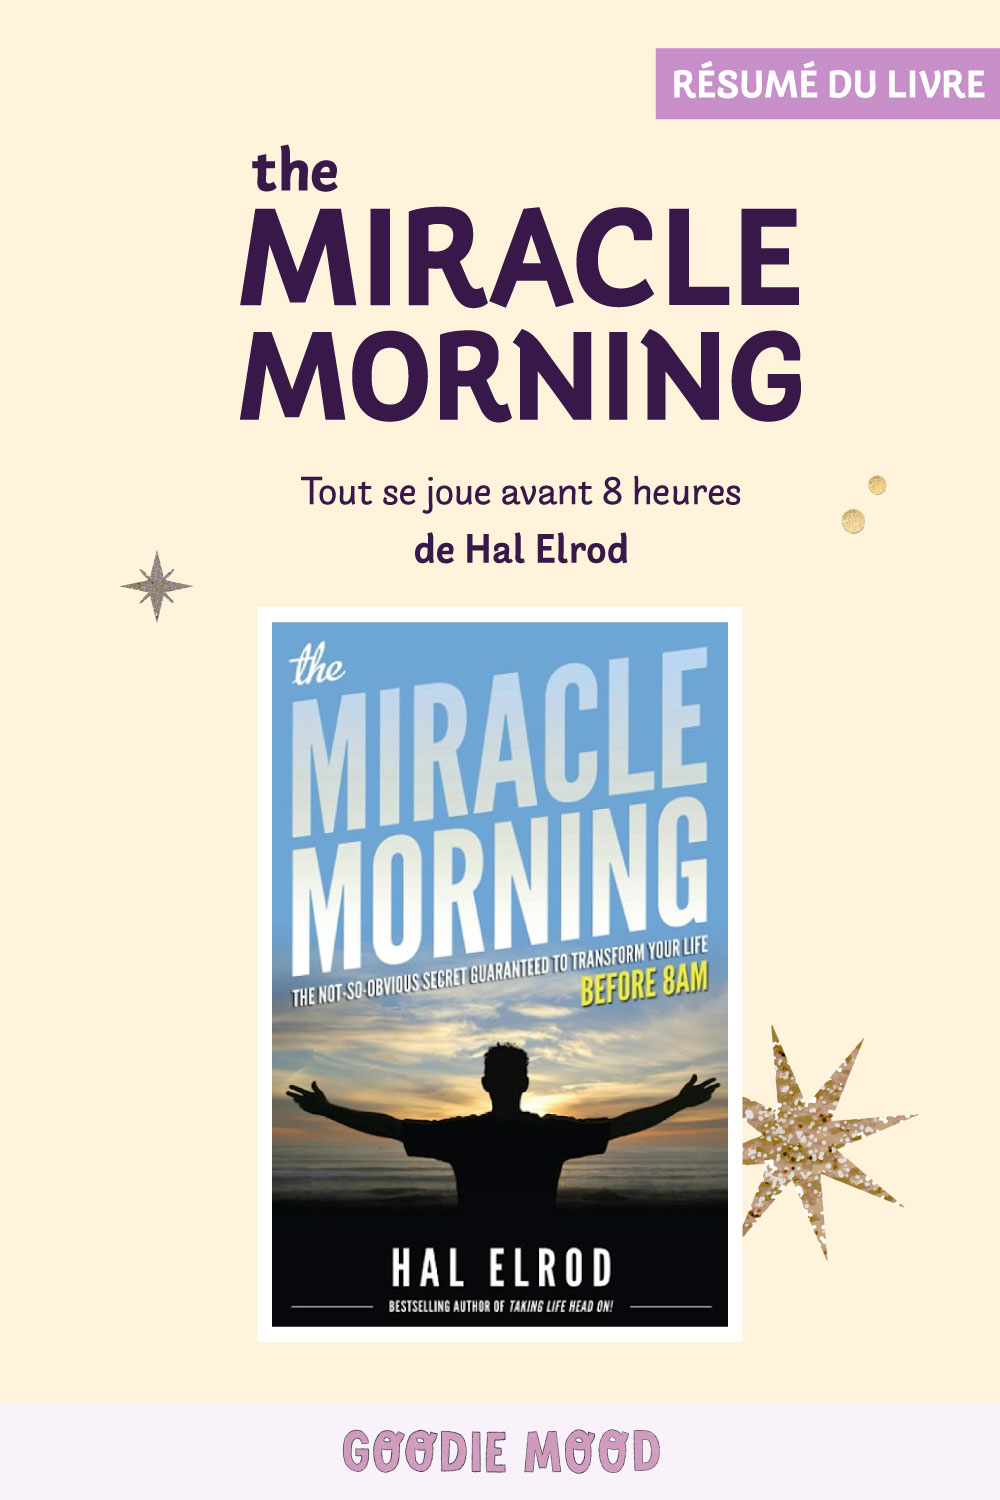 Résumé du livre The Miracle Morning de Hal Elrod sur Goodie Mood le blog feel good
